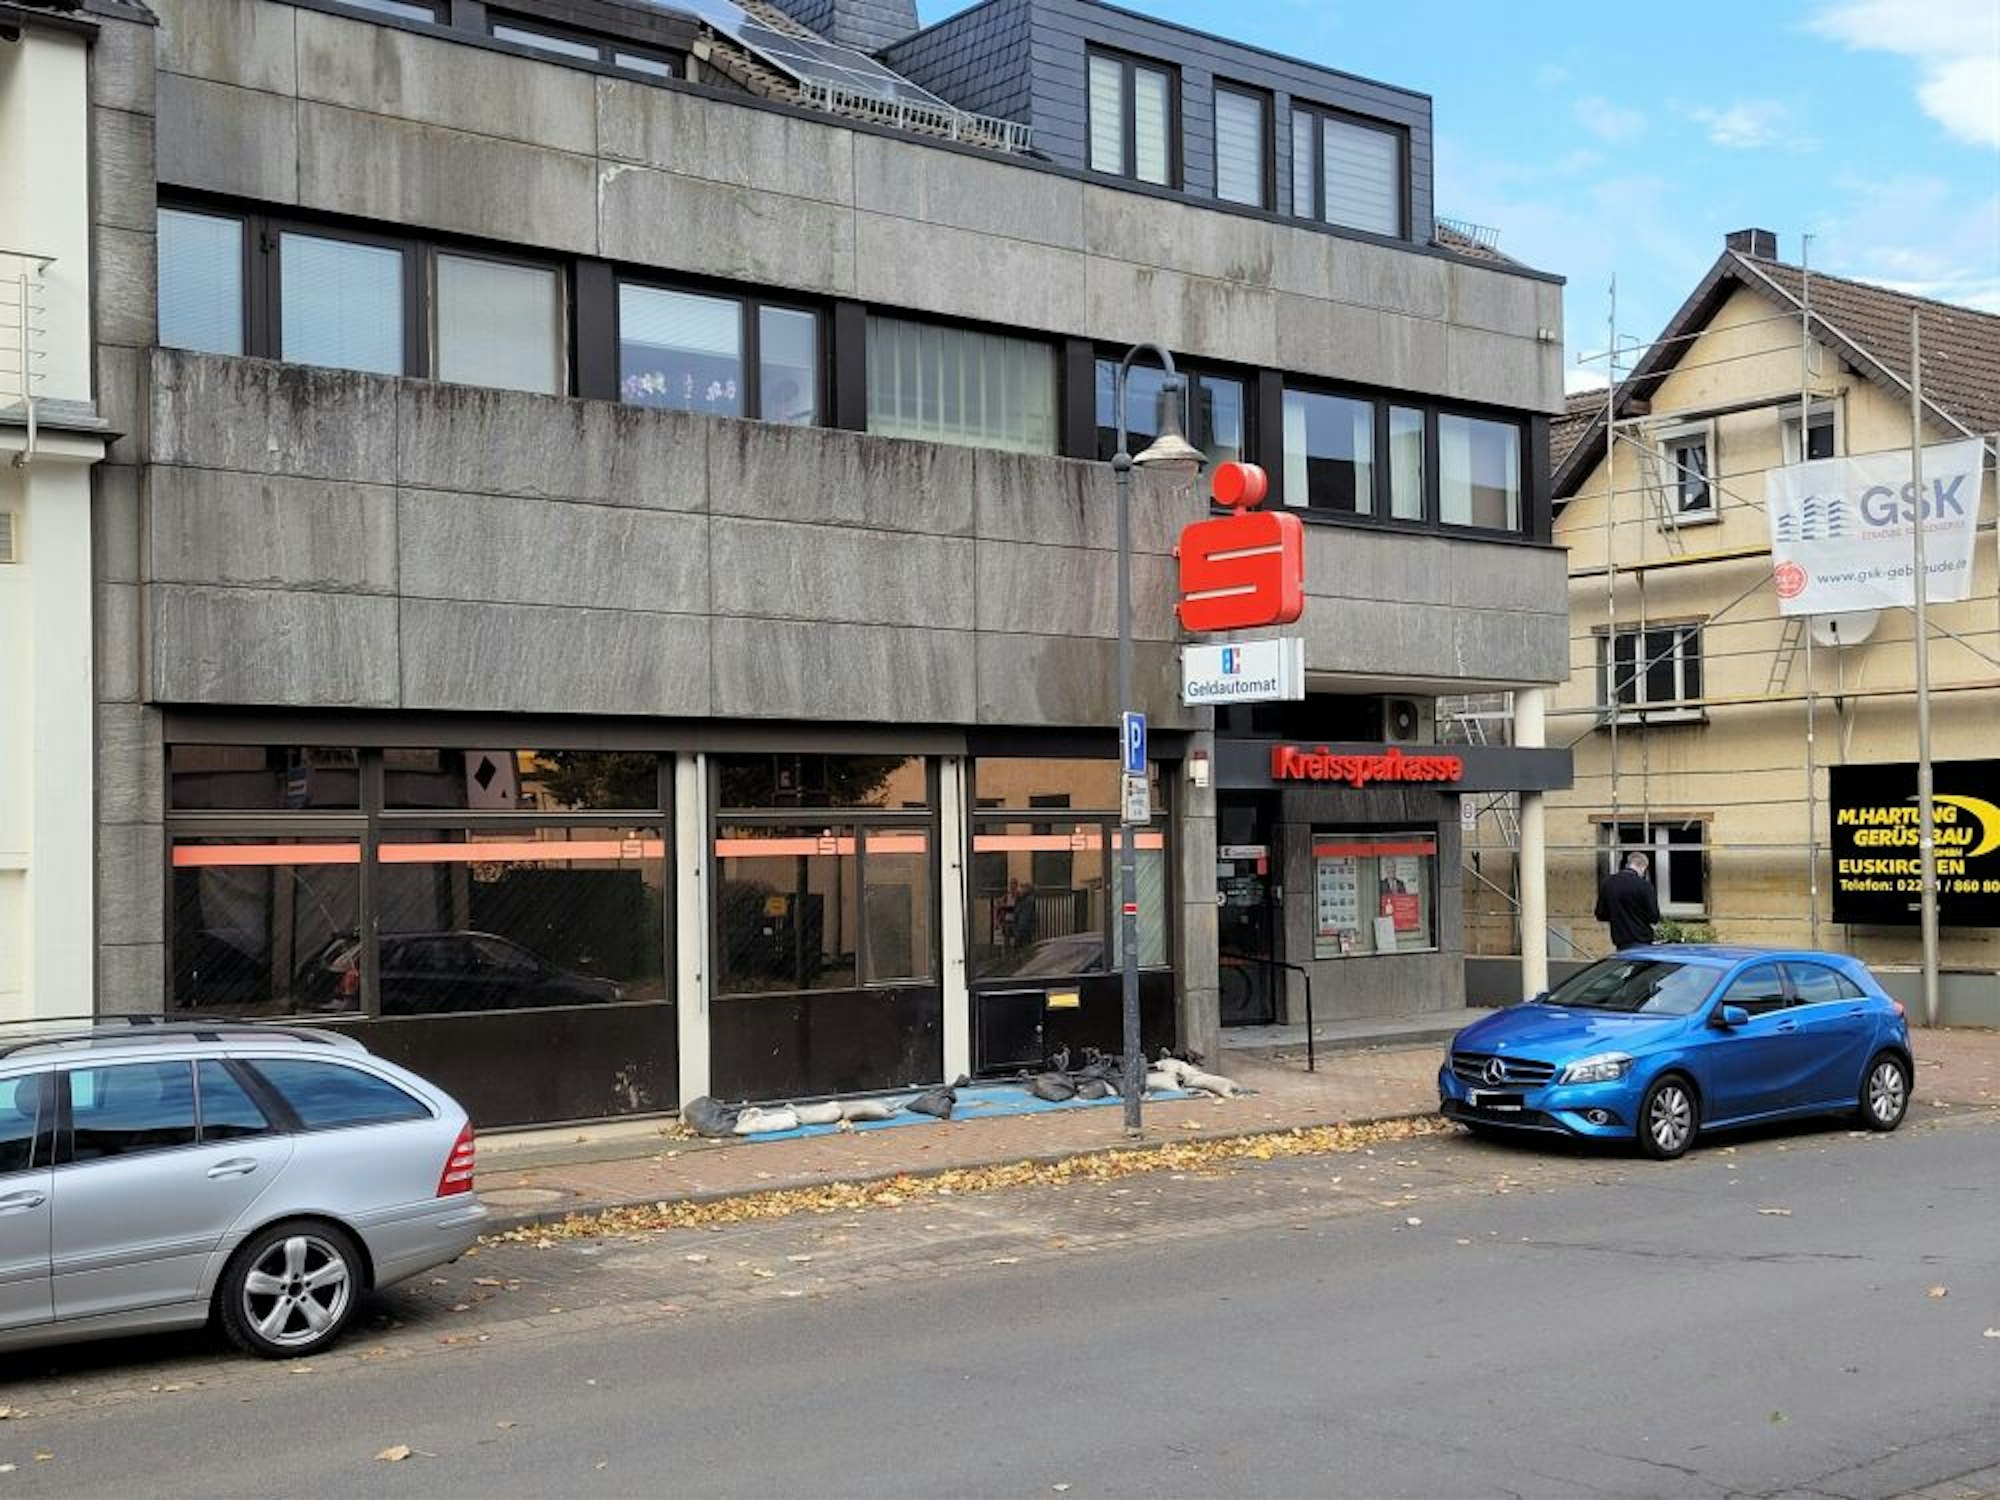 Bis zum Herbst 2022 wird es wohl noch dauern, bis die Geschäftsstelle der Kreissparkasse in der Bahnhofstraße wieder öffnet.